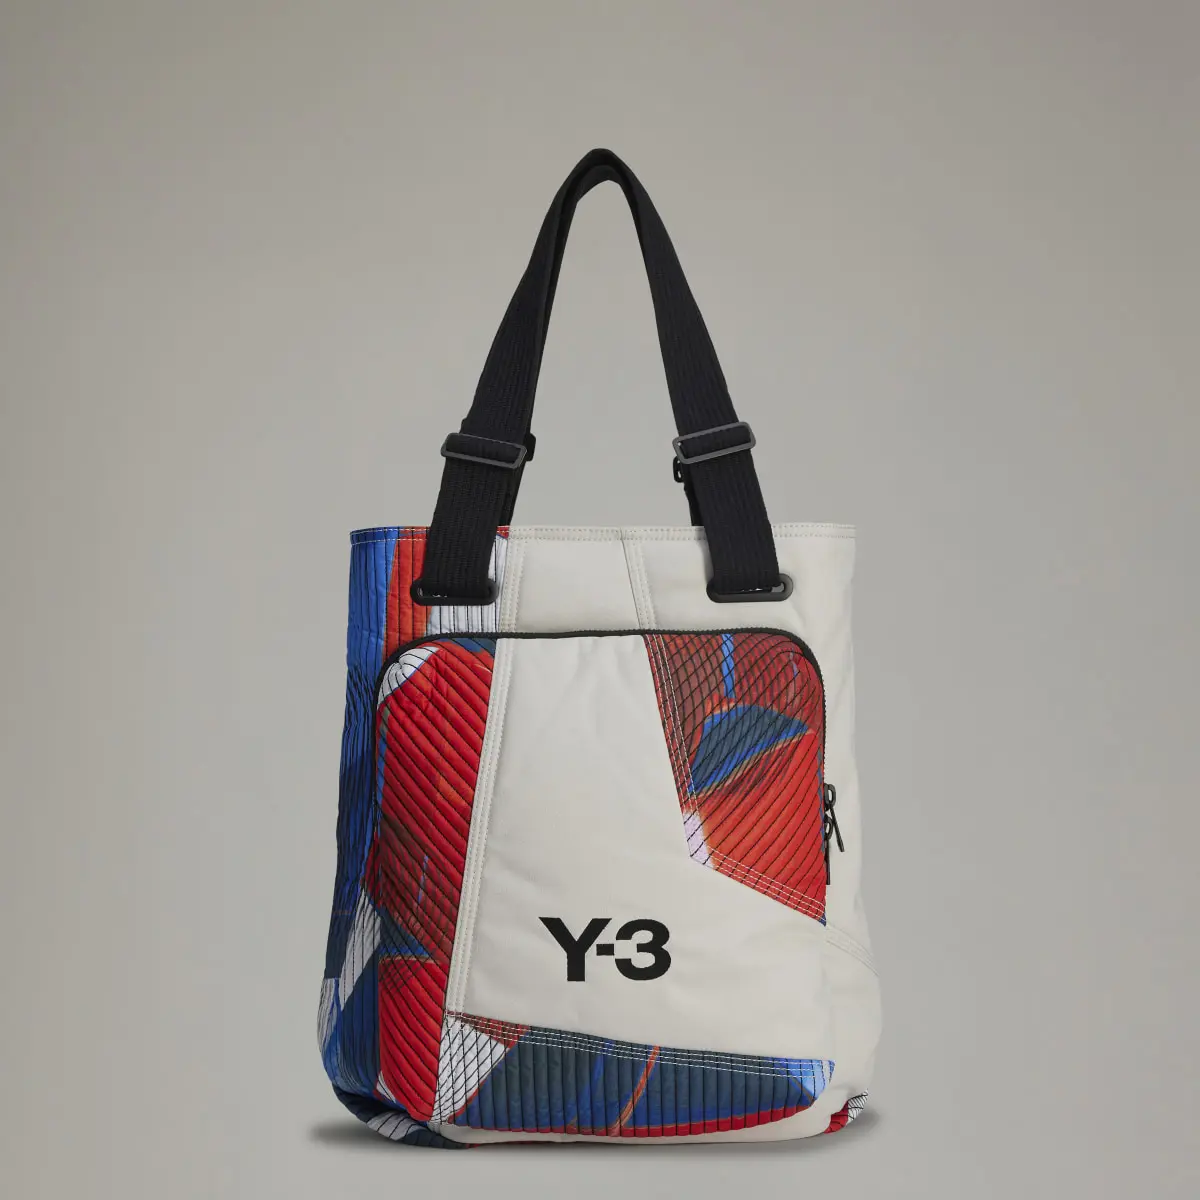 Adidas Y-3 Allover-Print Tote Bag. 1